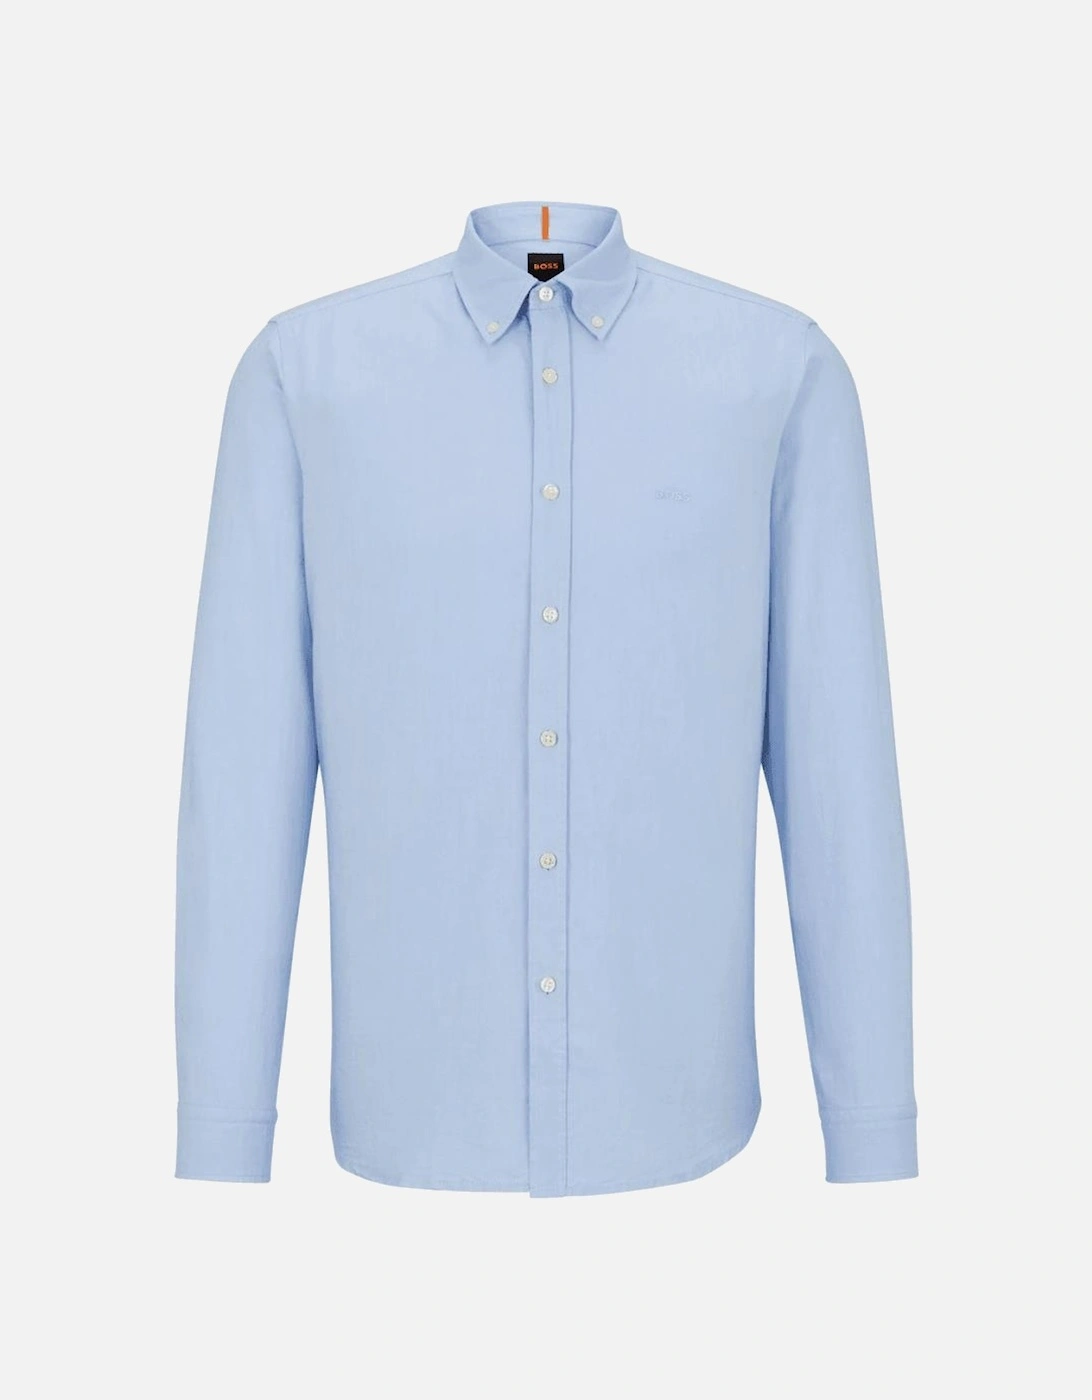 Rickert Cotton Regular Fit Light Blue Shirt, 4 of 3